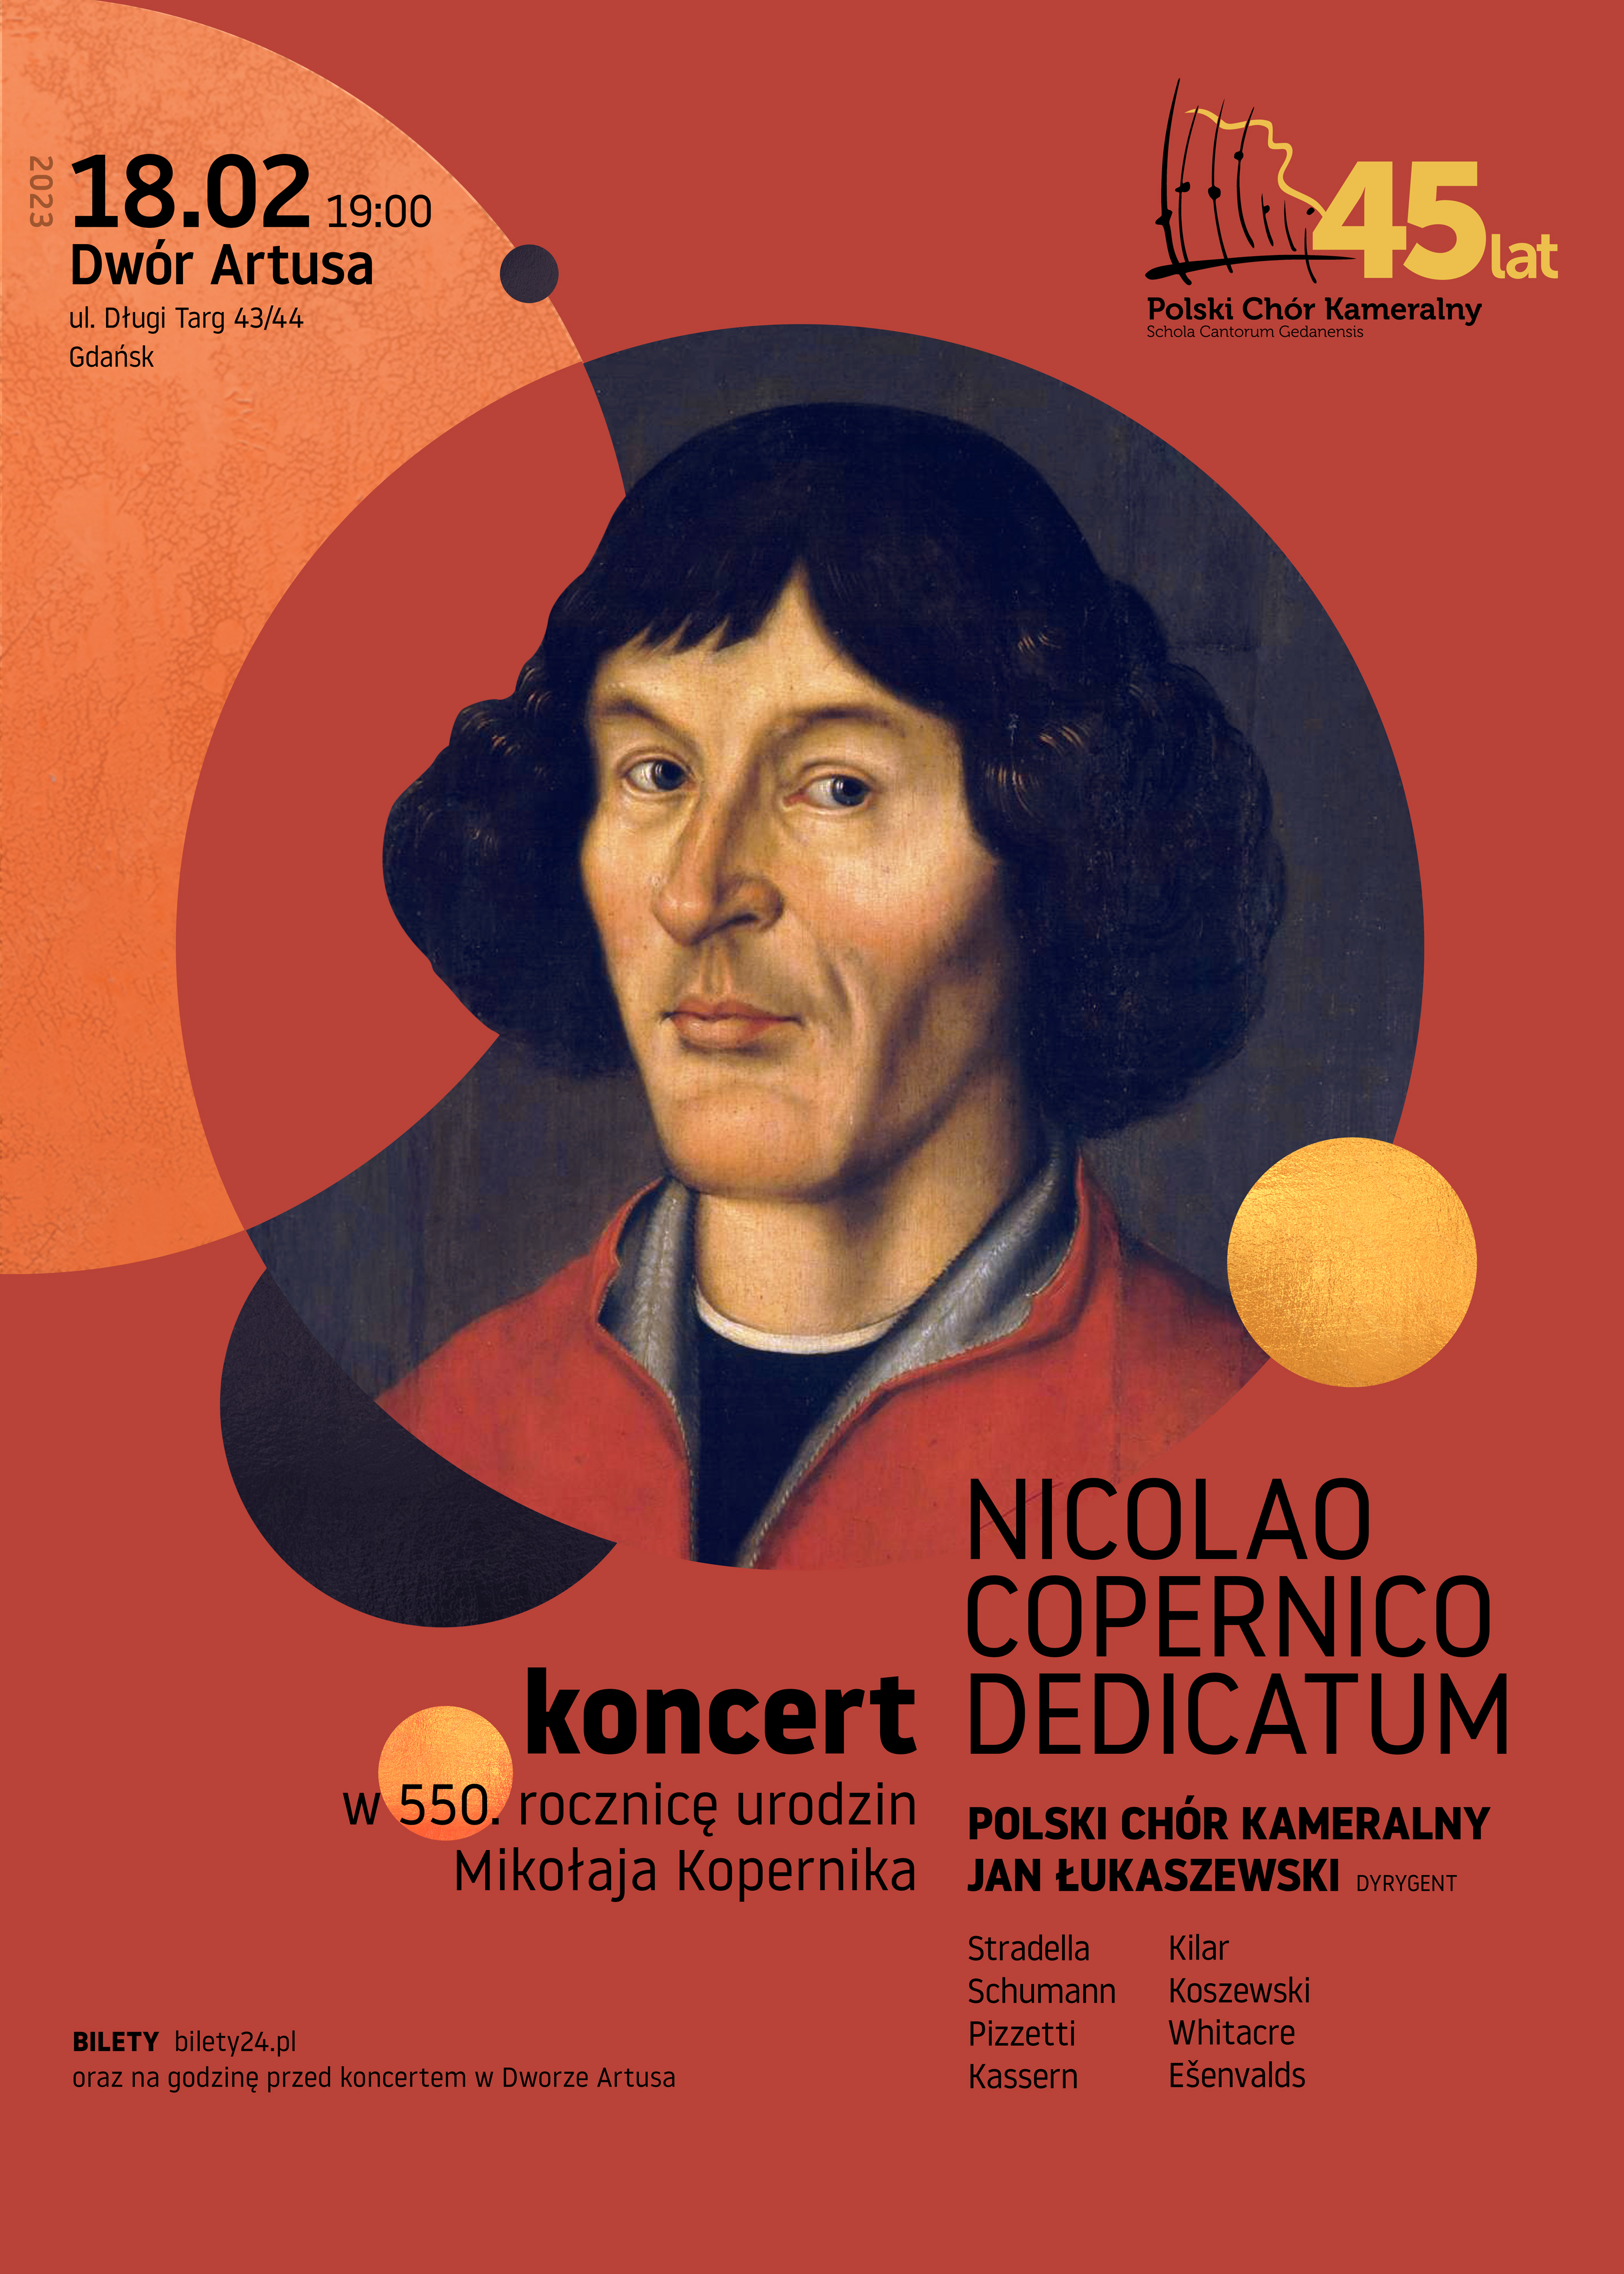 NICOLAO COPERNICO DEDICATUM koncert w 550. rocznicę urodzin Mikołaja Kopernika | Gdańsk